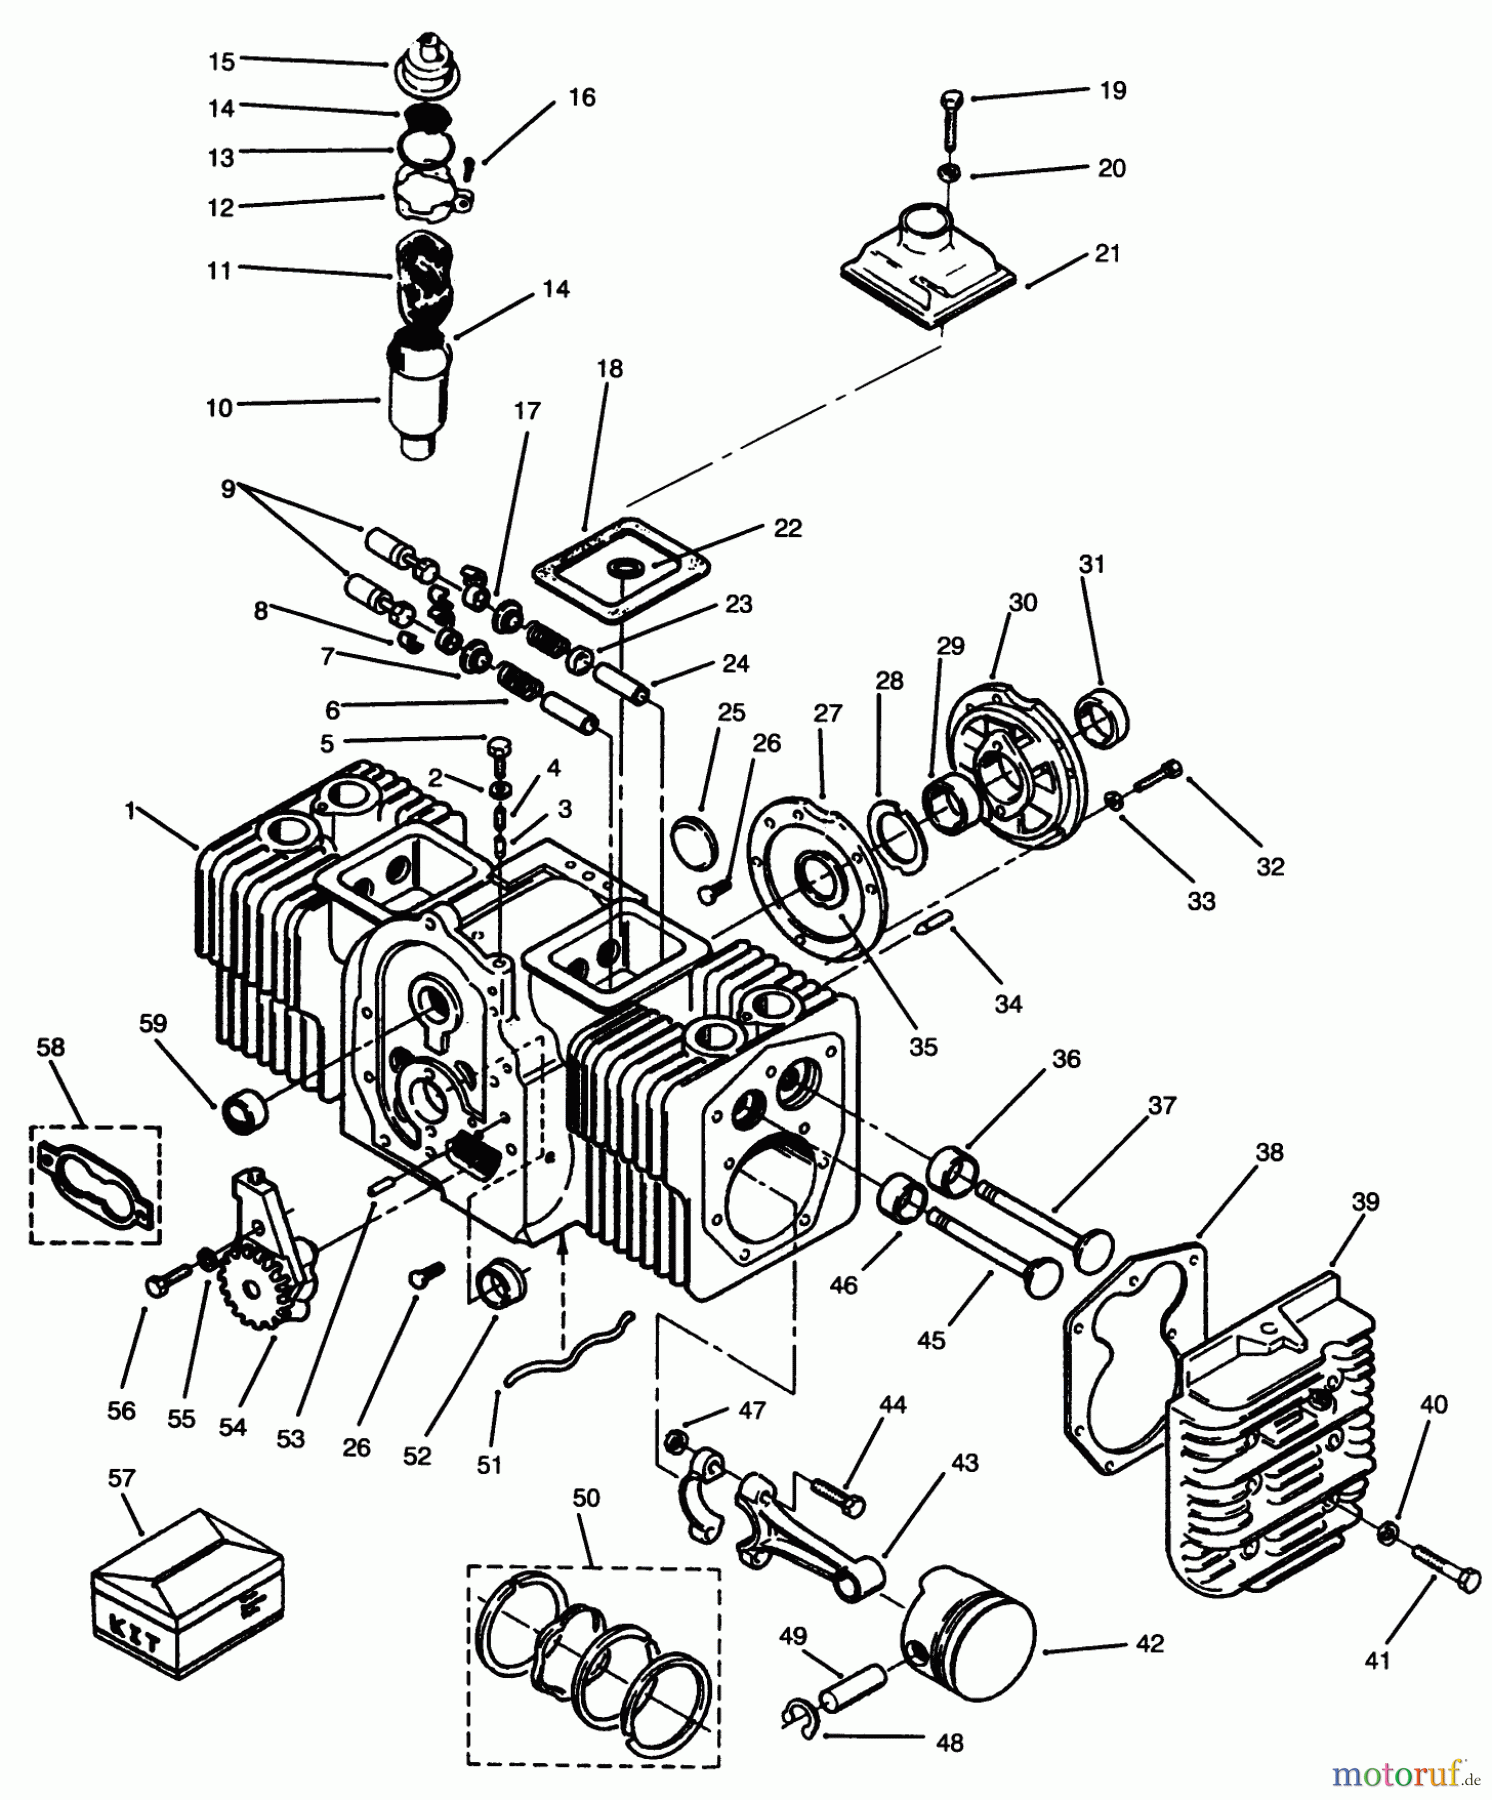  Toro Neu Mowers, Lawn & Garden Tractor Seite 1 73501 (520-H) - Toro 520-H Garden Tractor, 1996 (69000001-69999999) ENGINE CYLINDER BLOCK